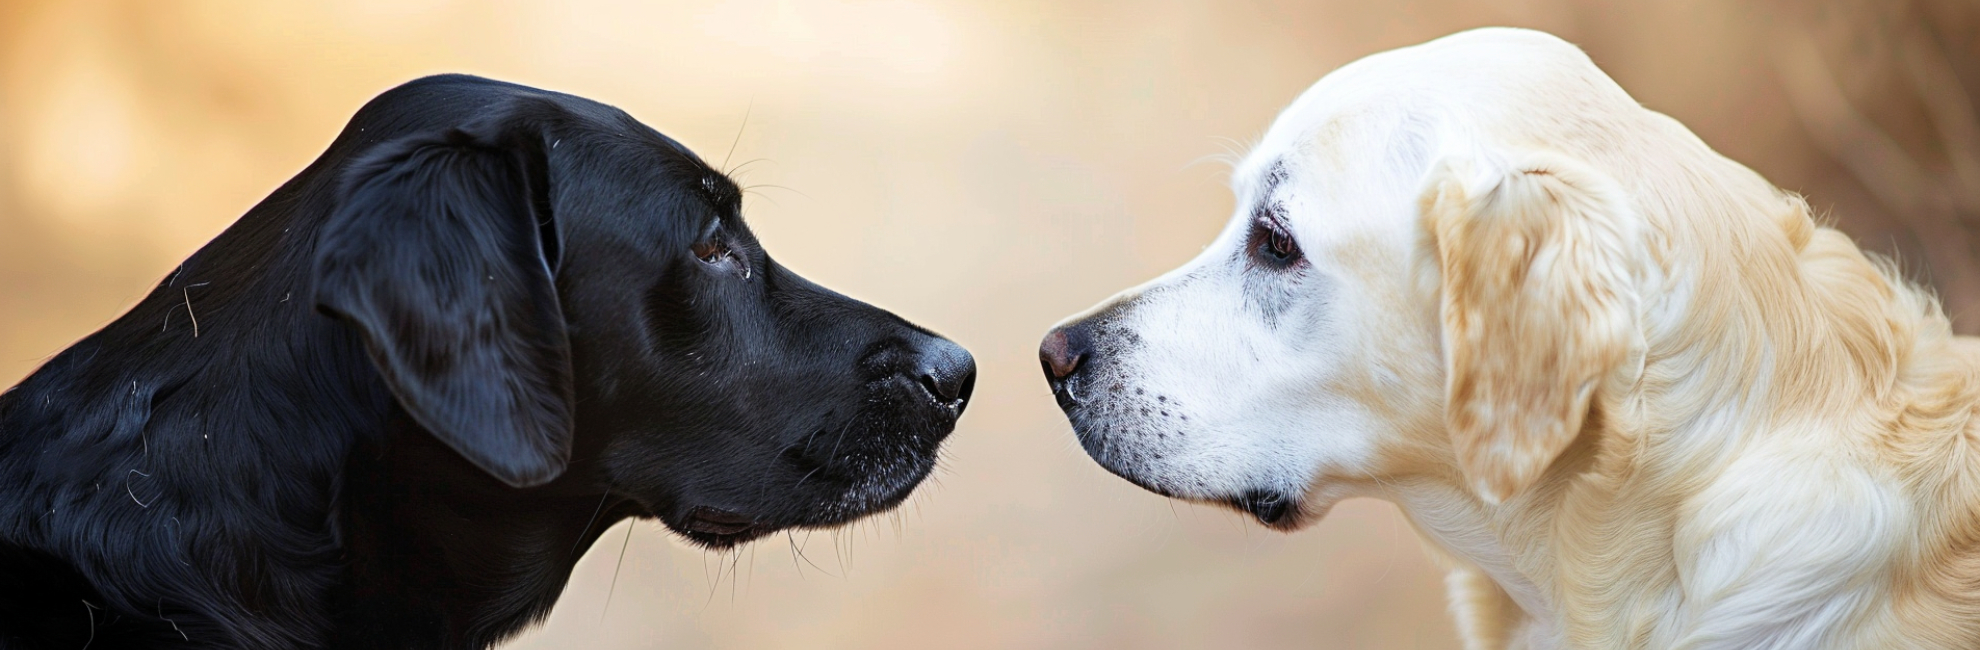 Insegnare al cane ad ignorare altri cani